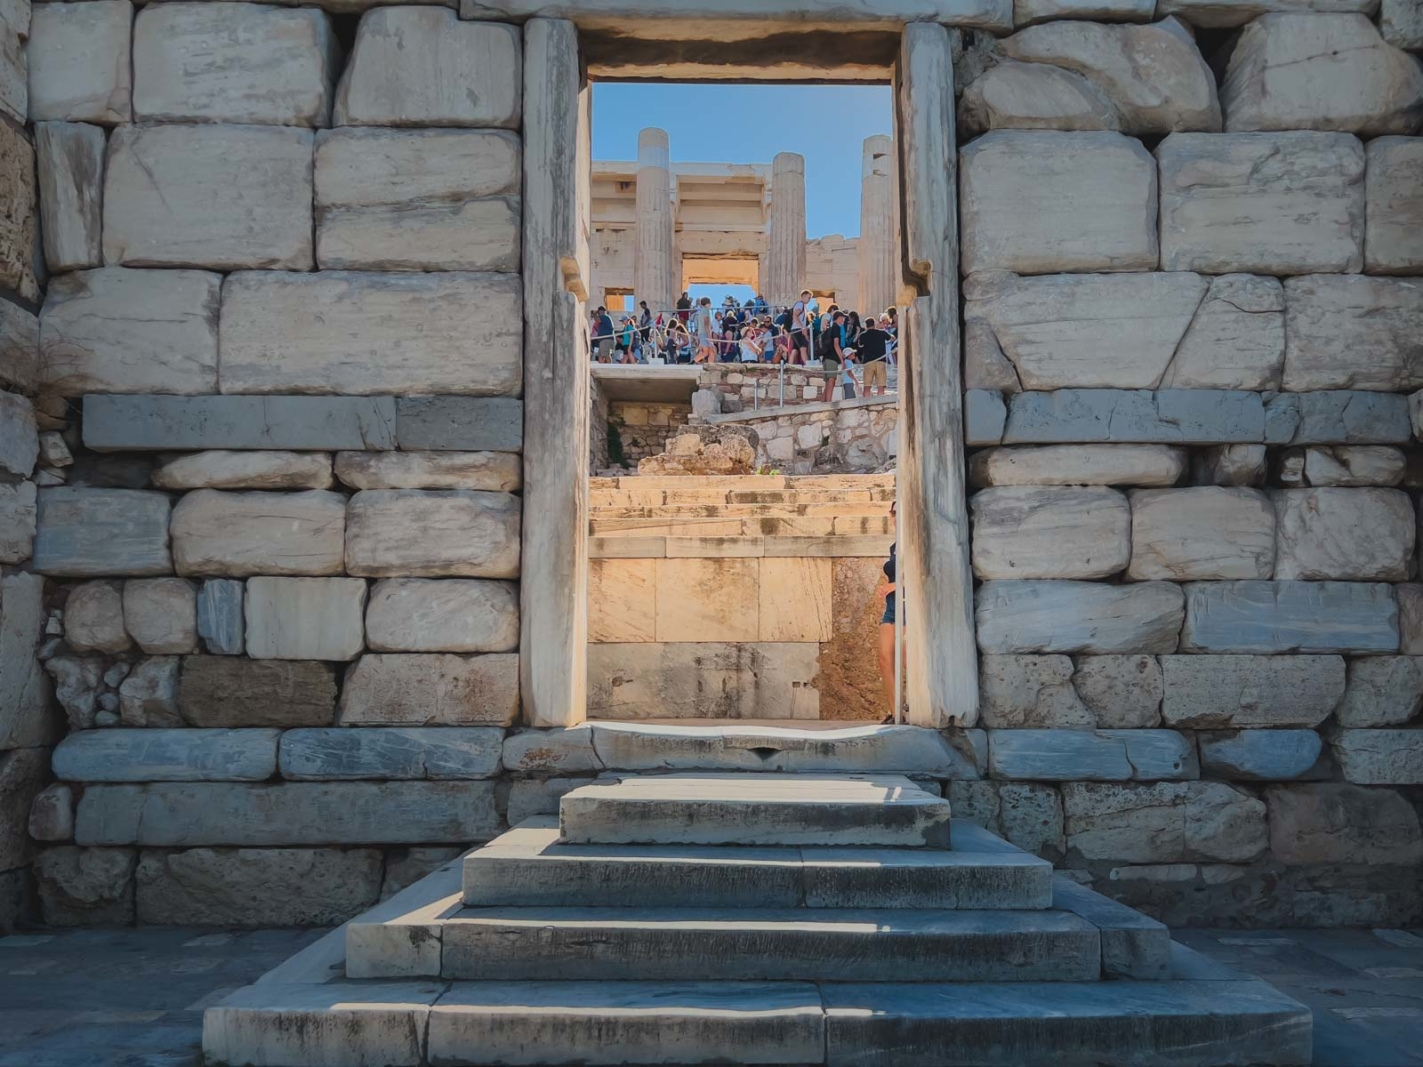 acropolis visit hours